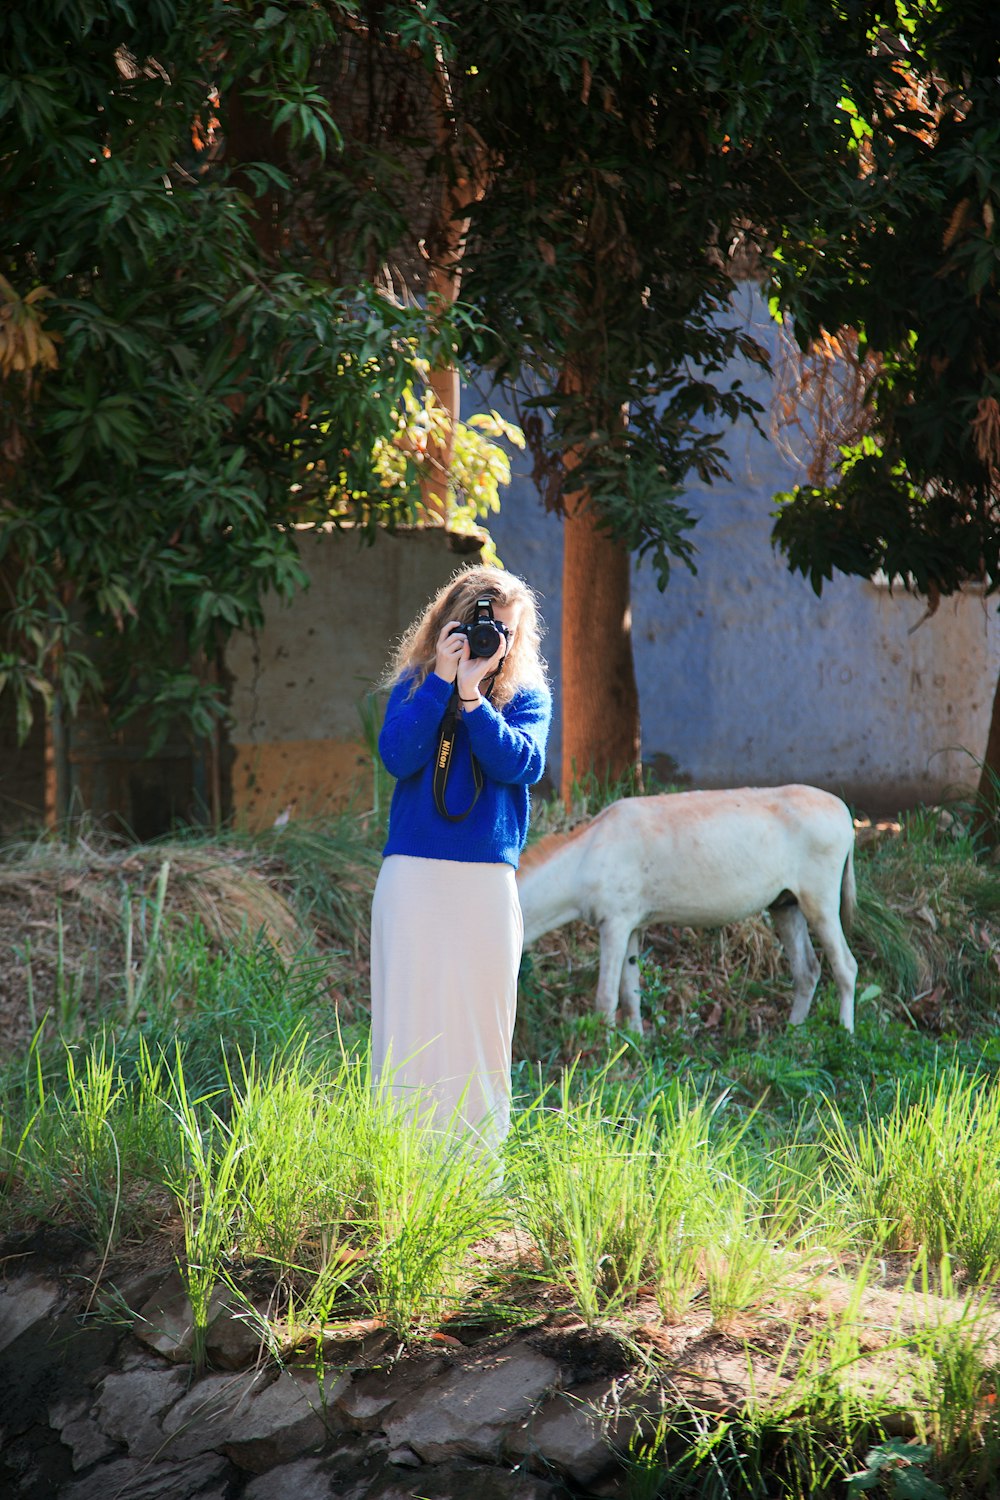 牛の写真を撮っている女性